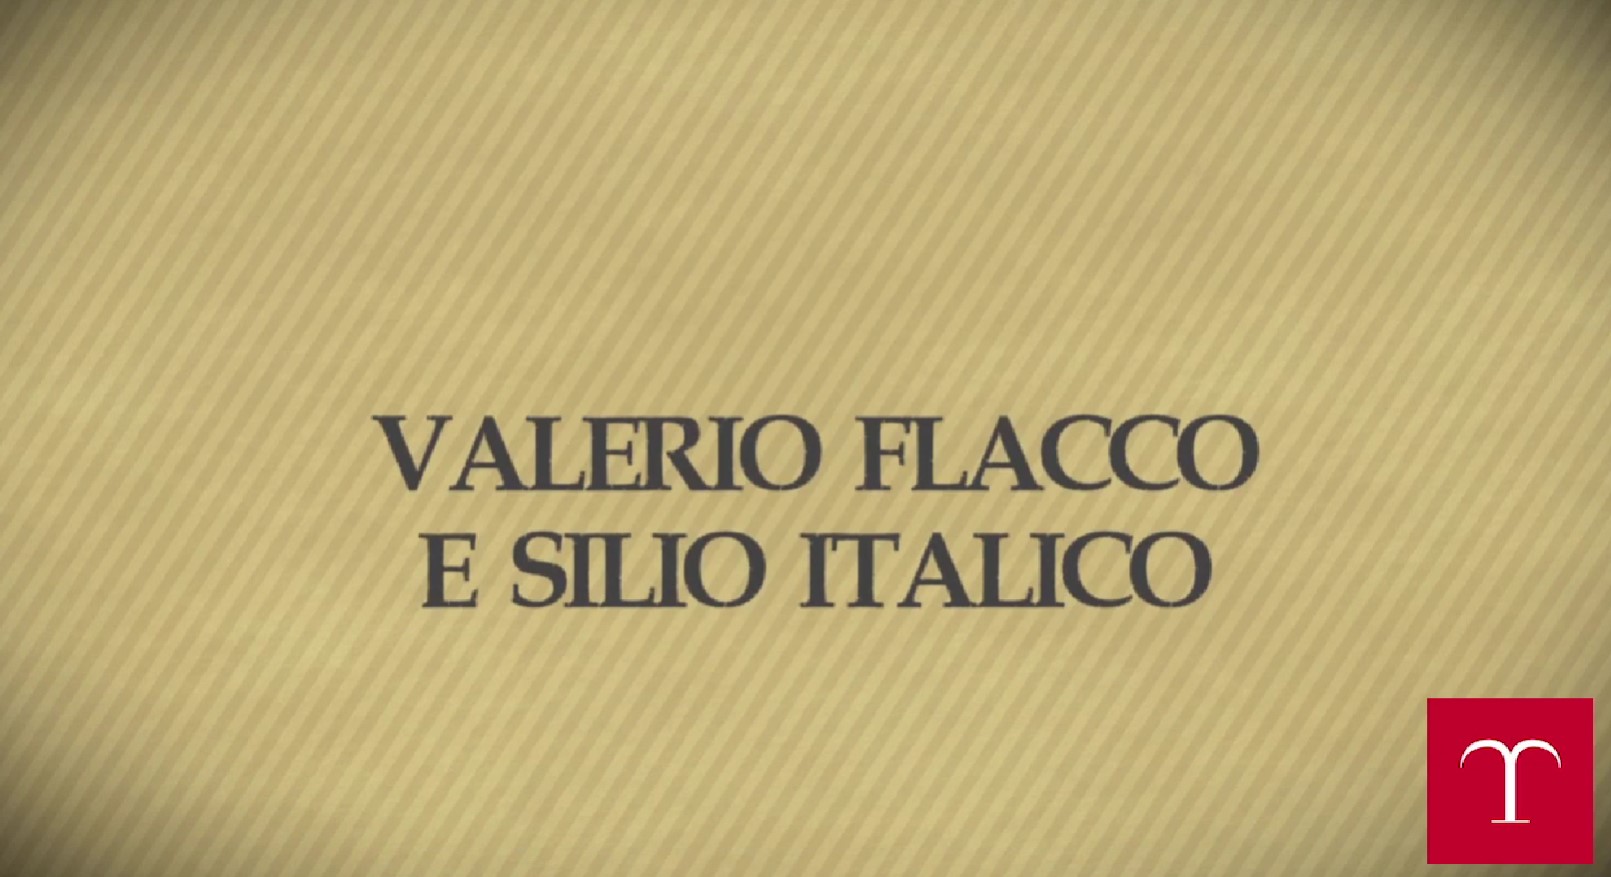 Valerio Flacco e Silio Italico